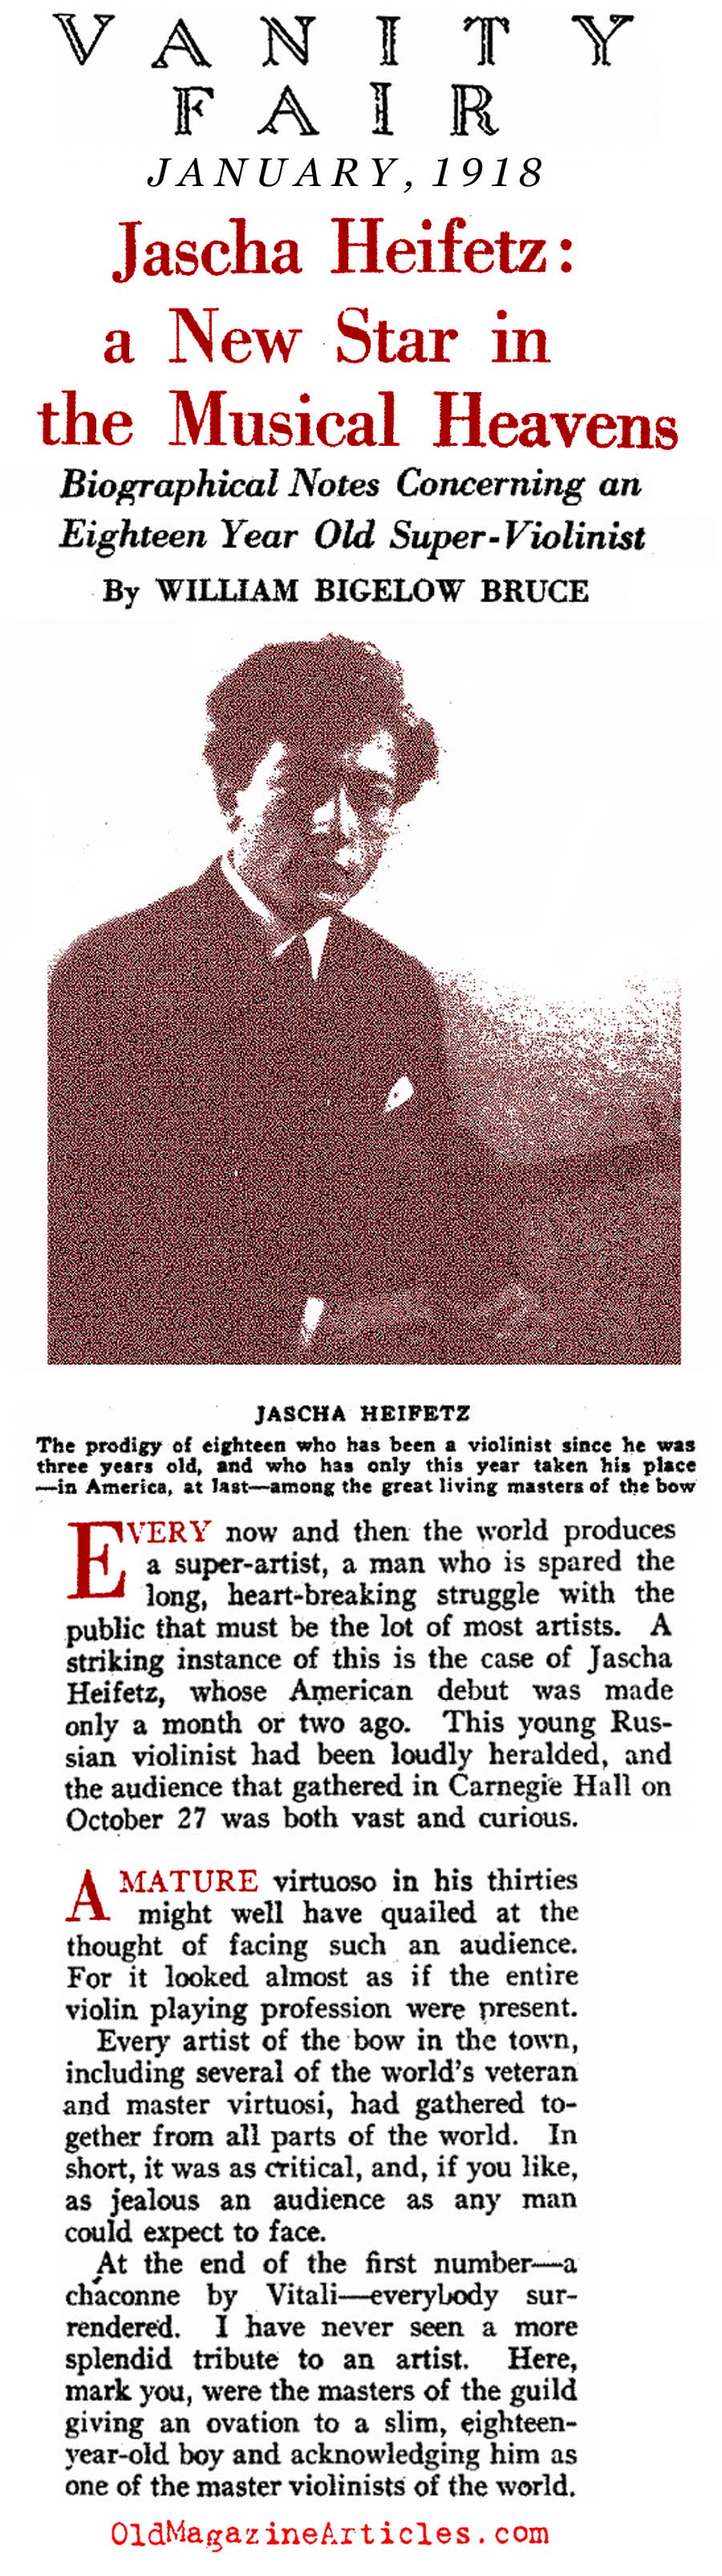 Jascha Heifetz' First New York Recital  (Vanity Fair, 1918)